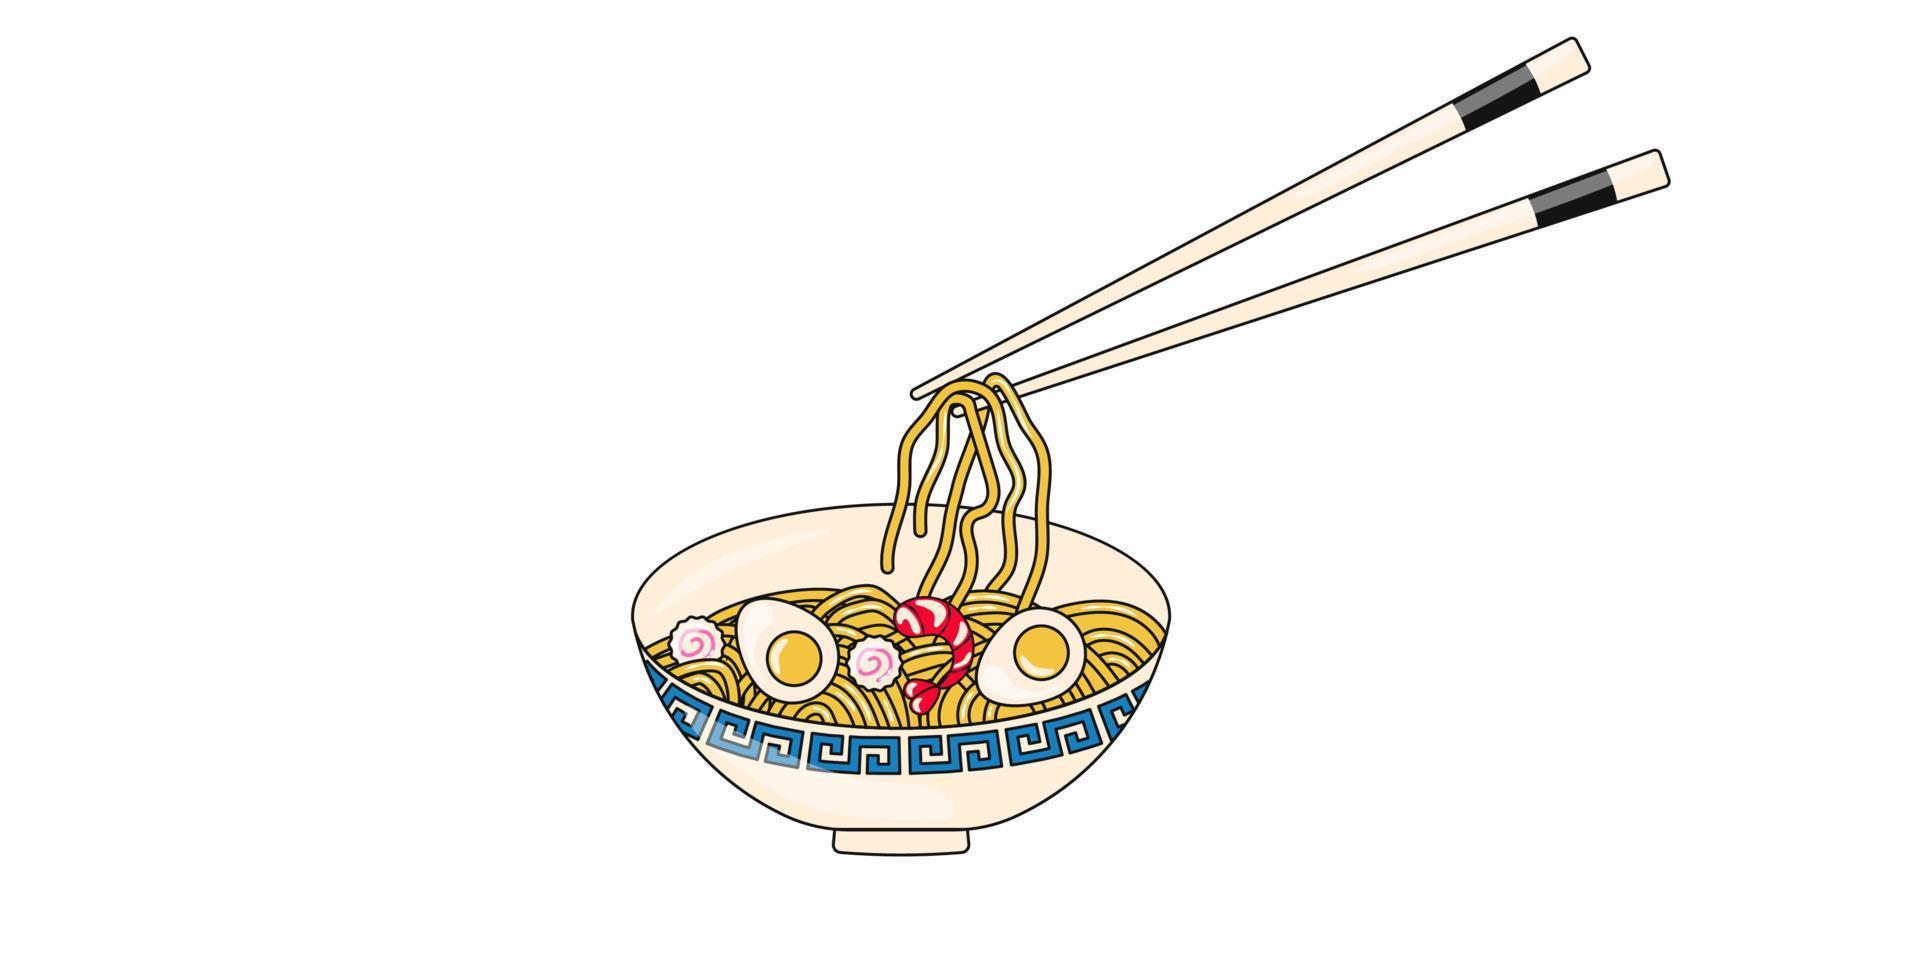 macarrão ramen japonês com ovo kamaboko e camarão comida asiática vetor